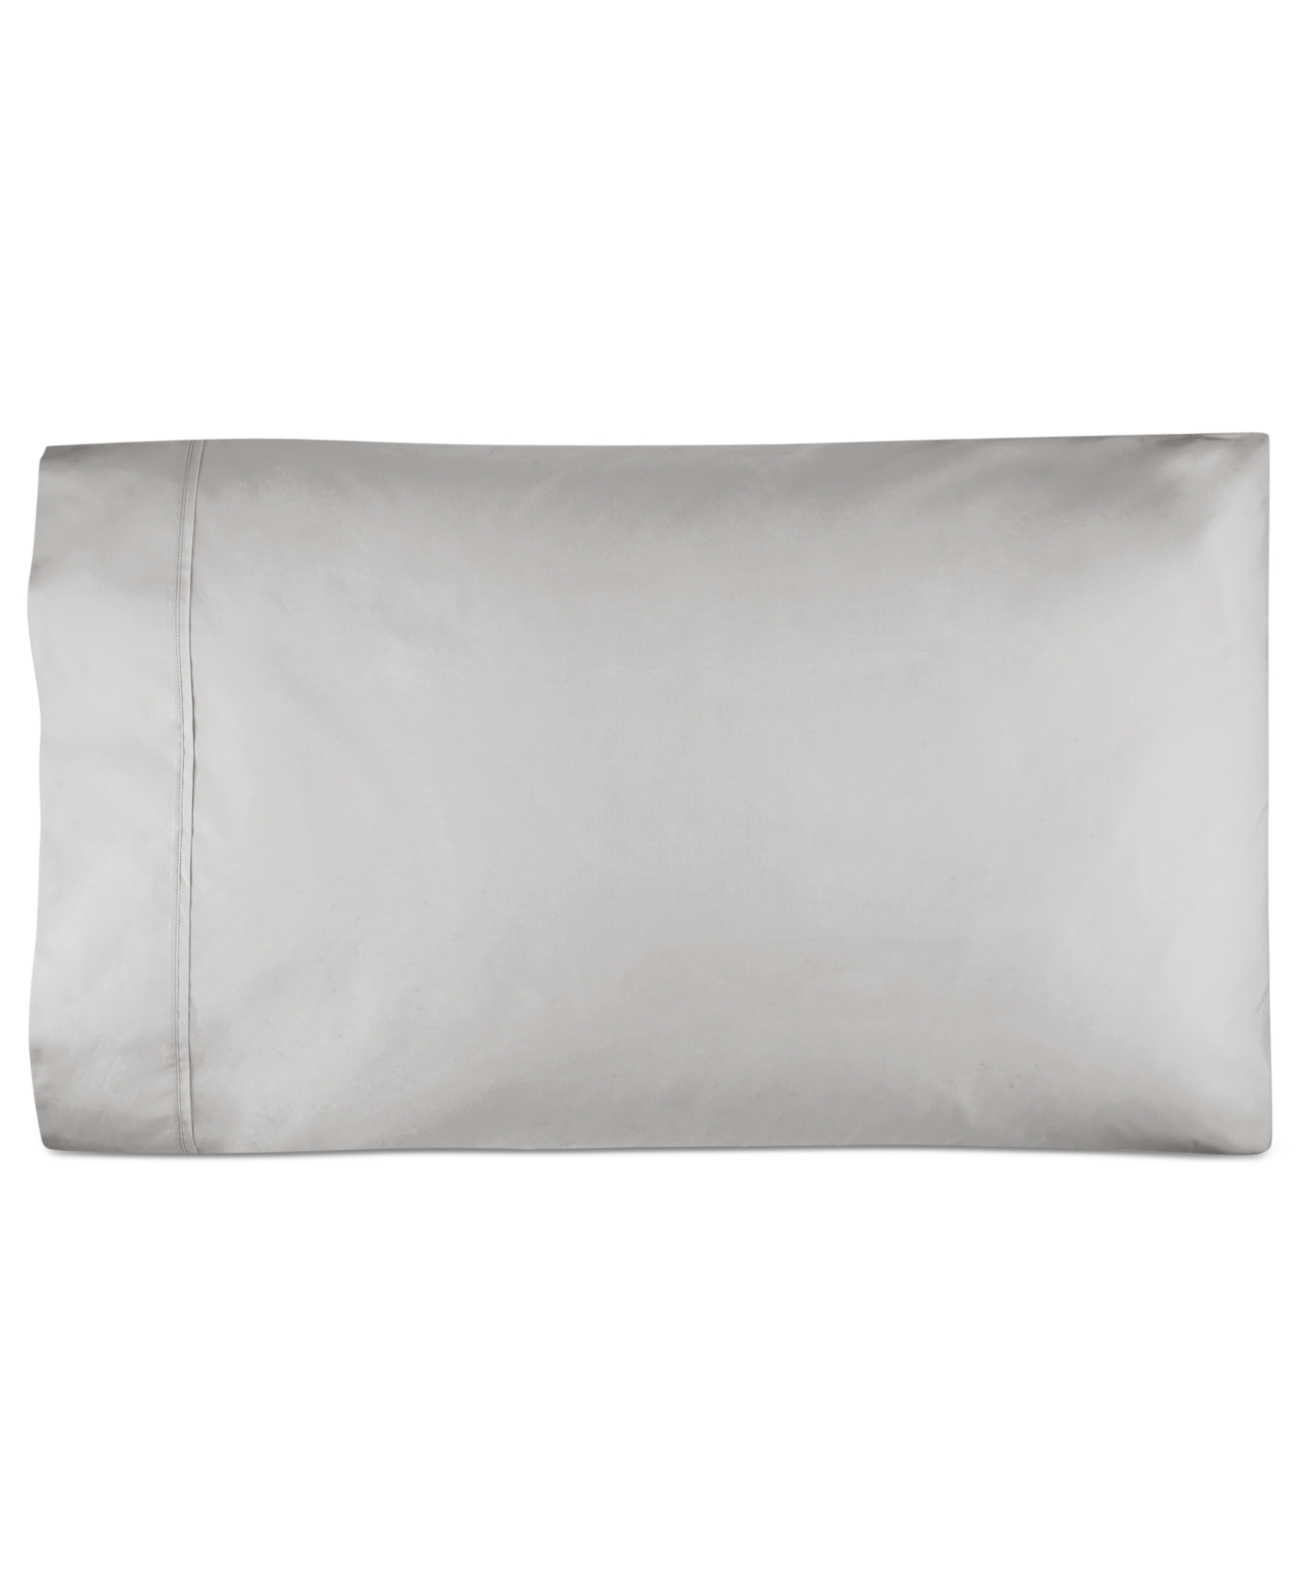 Ralph Lauren Rl 464 Percale Standard Pillowcases Bedding, Gray 